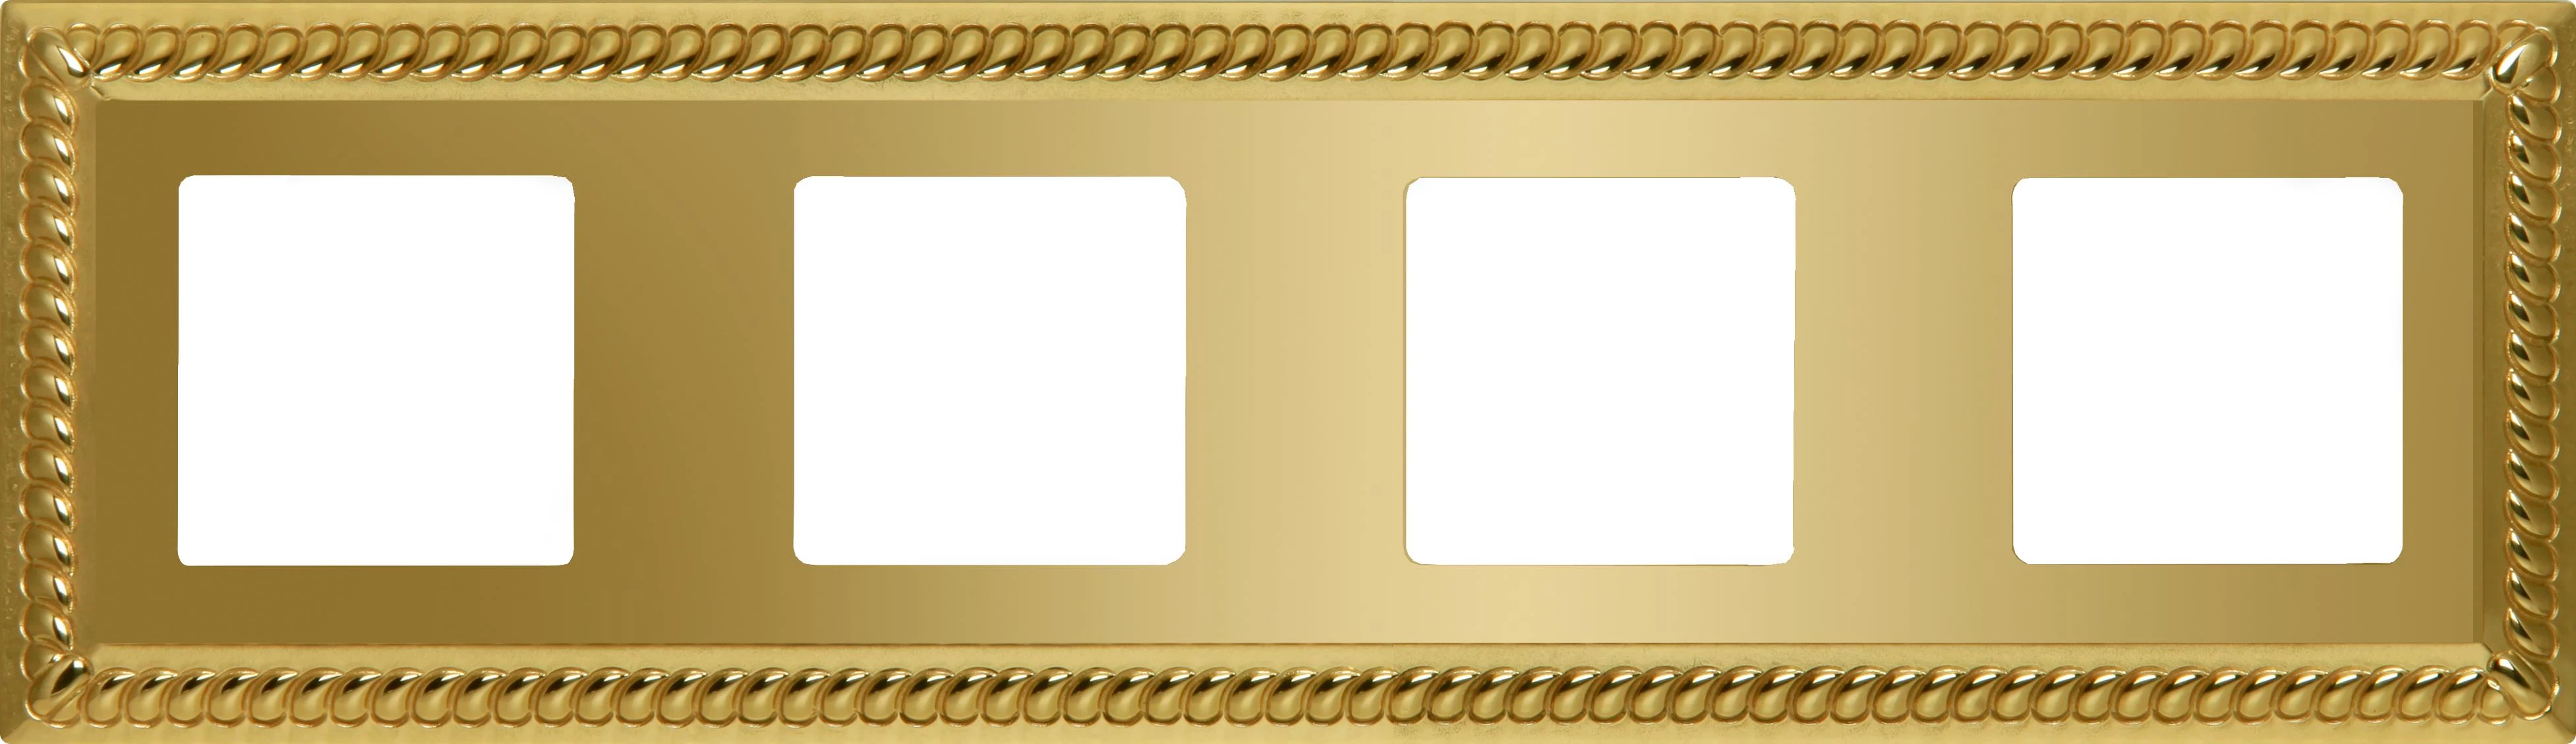  артикул FD01234OB название Рамка 4-ая (четверная), цвет Светлое золото, Sevilla, Fede